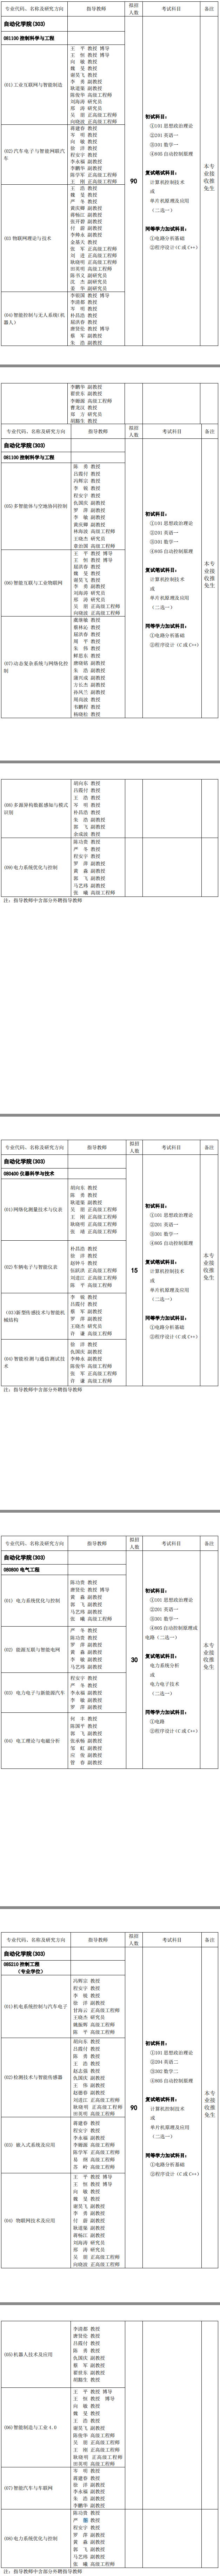 重庆邮电大学自动化学院2019考研专业目录